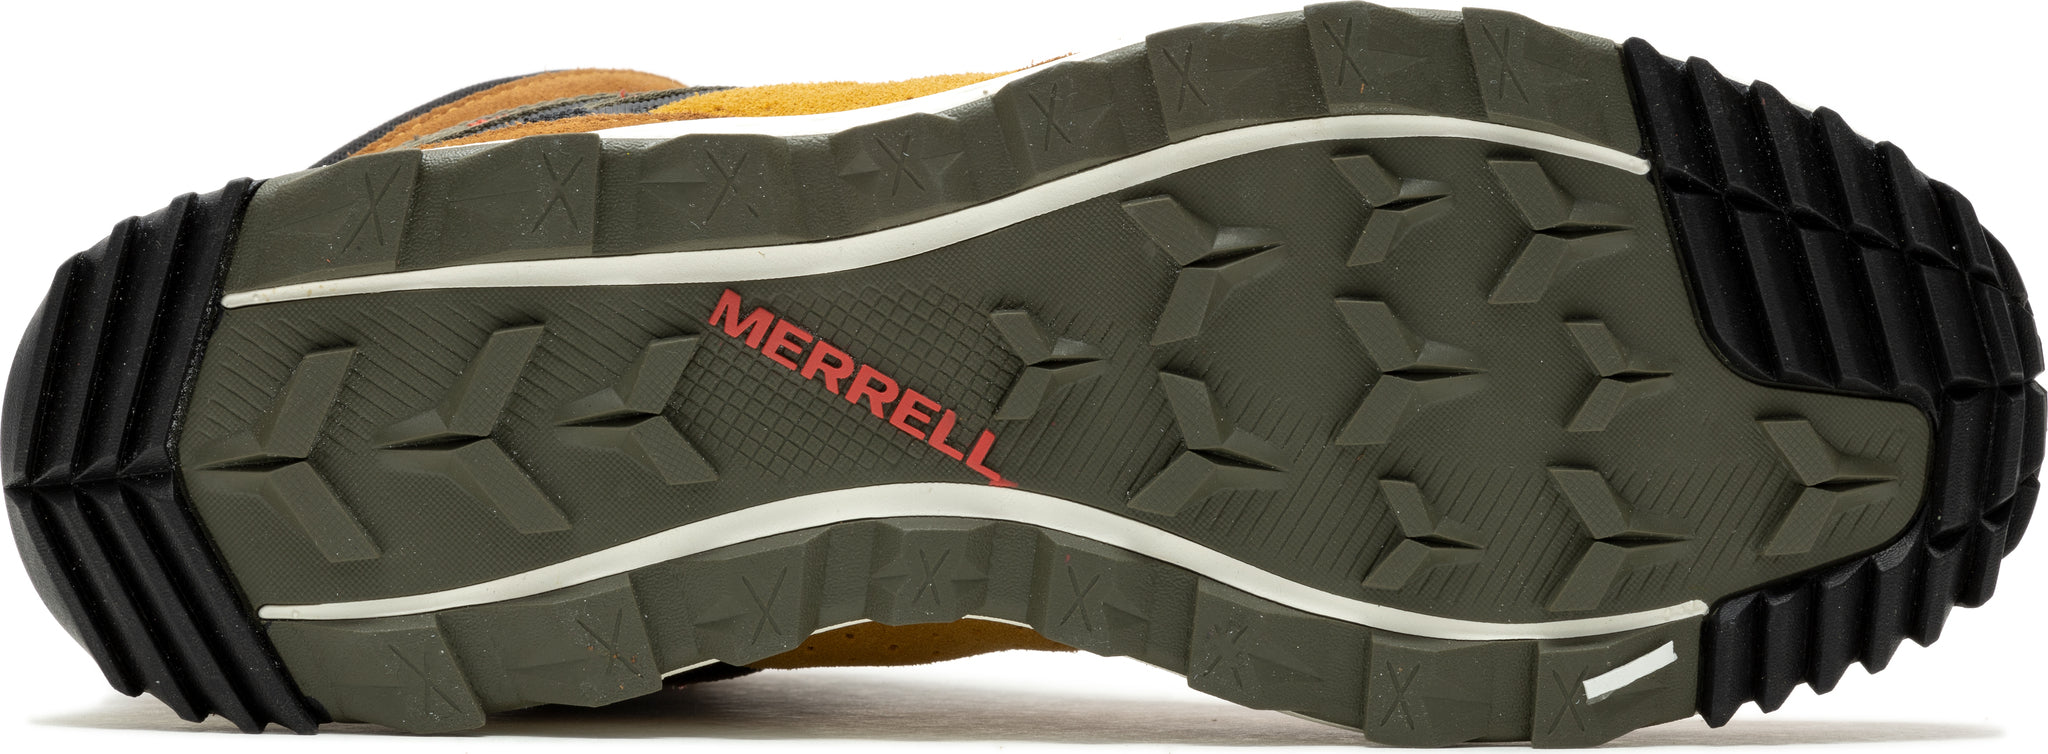 Merrell Wildwood Mid Waterproof Sneaker Boots - Men's | MEC